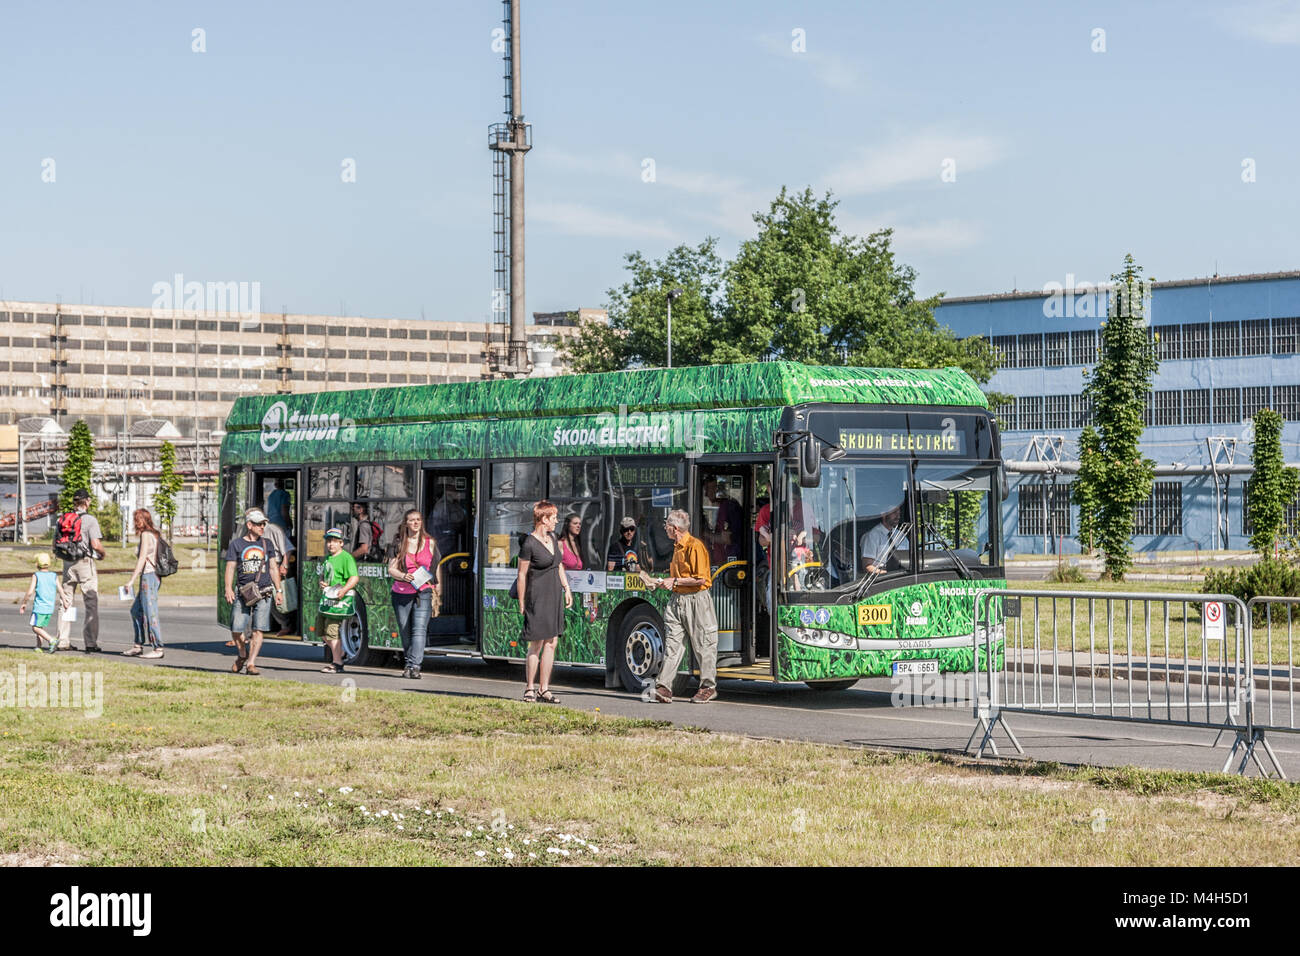 Skoda / Solaris hybrid bus in Plzen Stock Photo